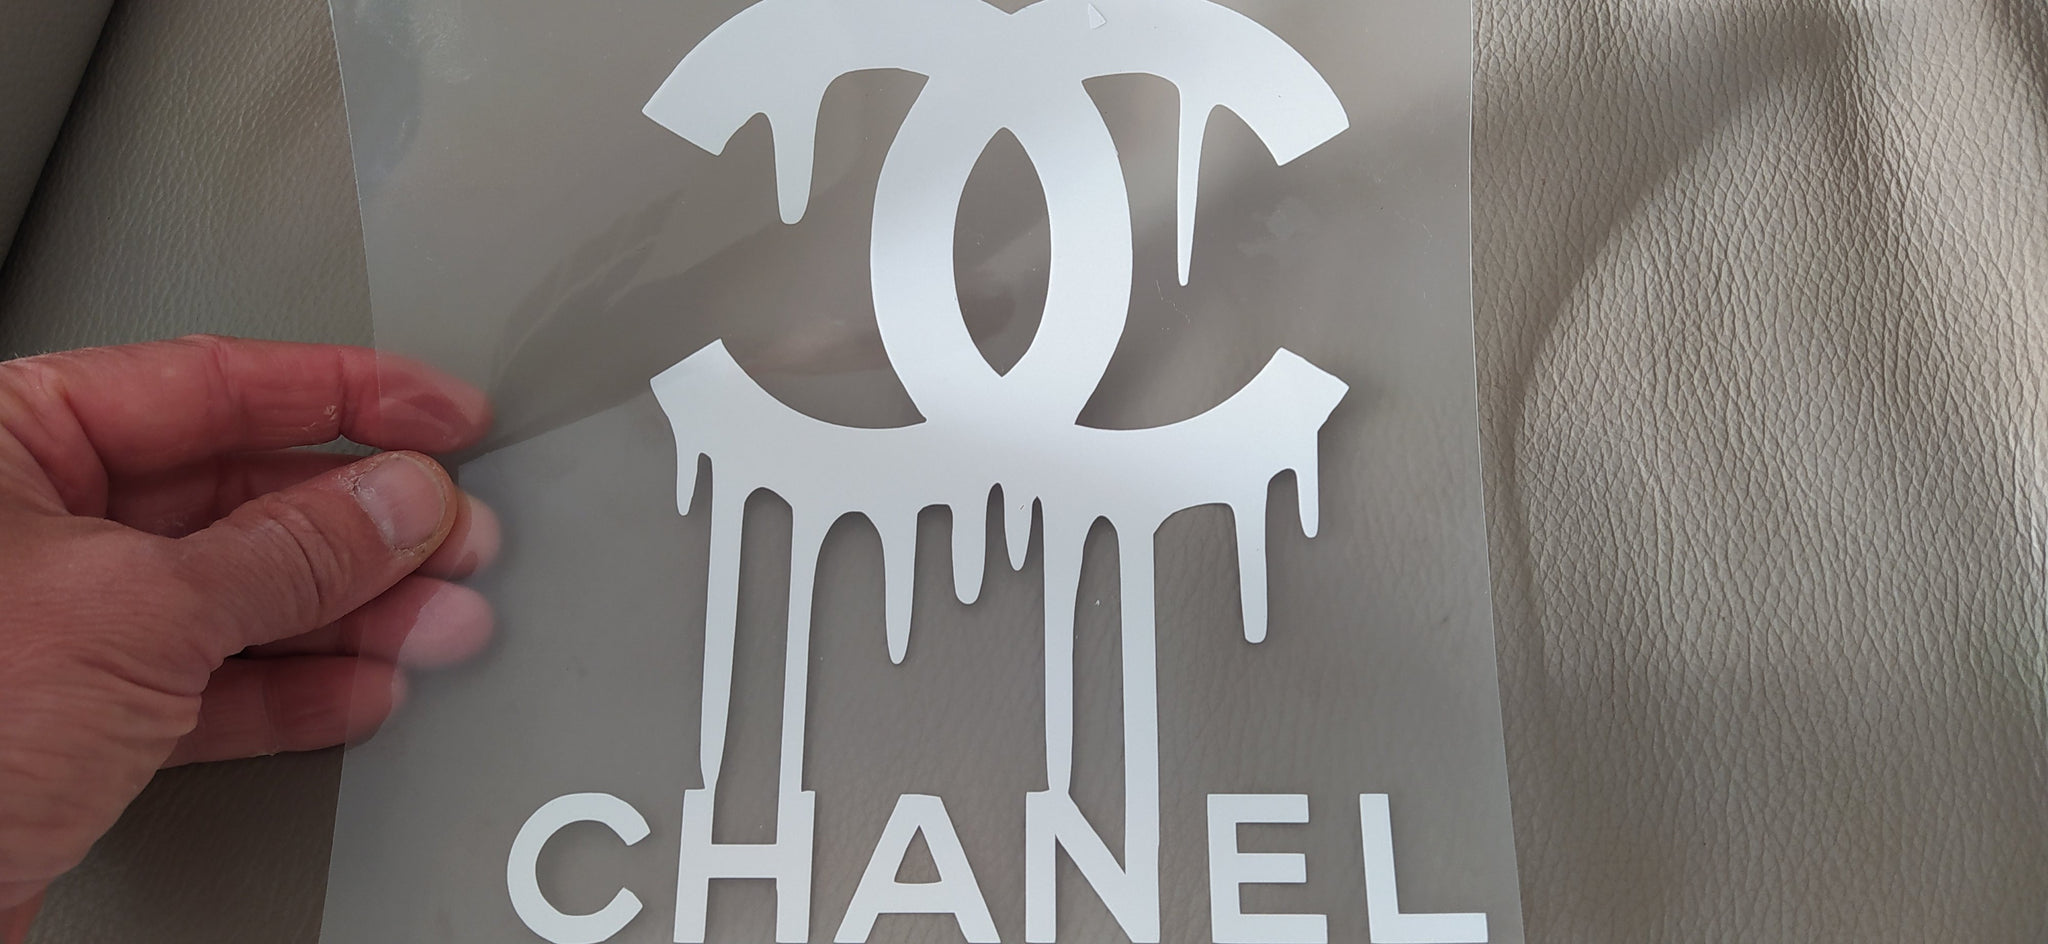 cc chanel logo